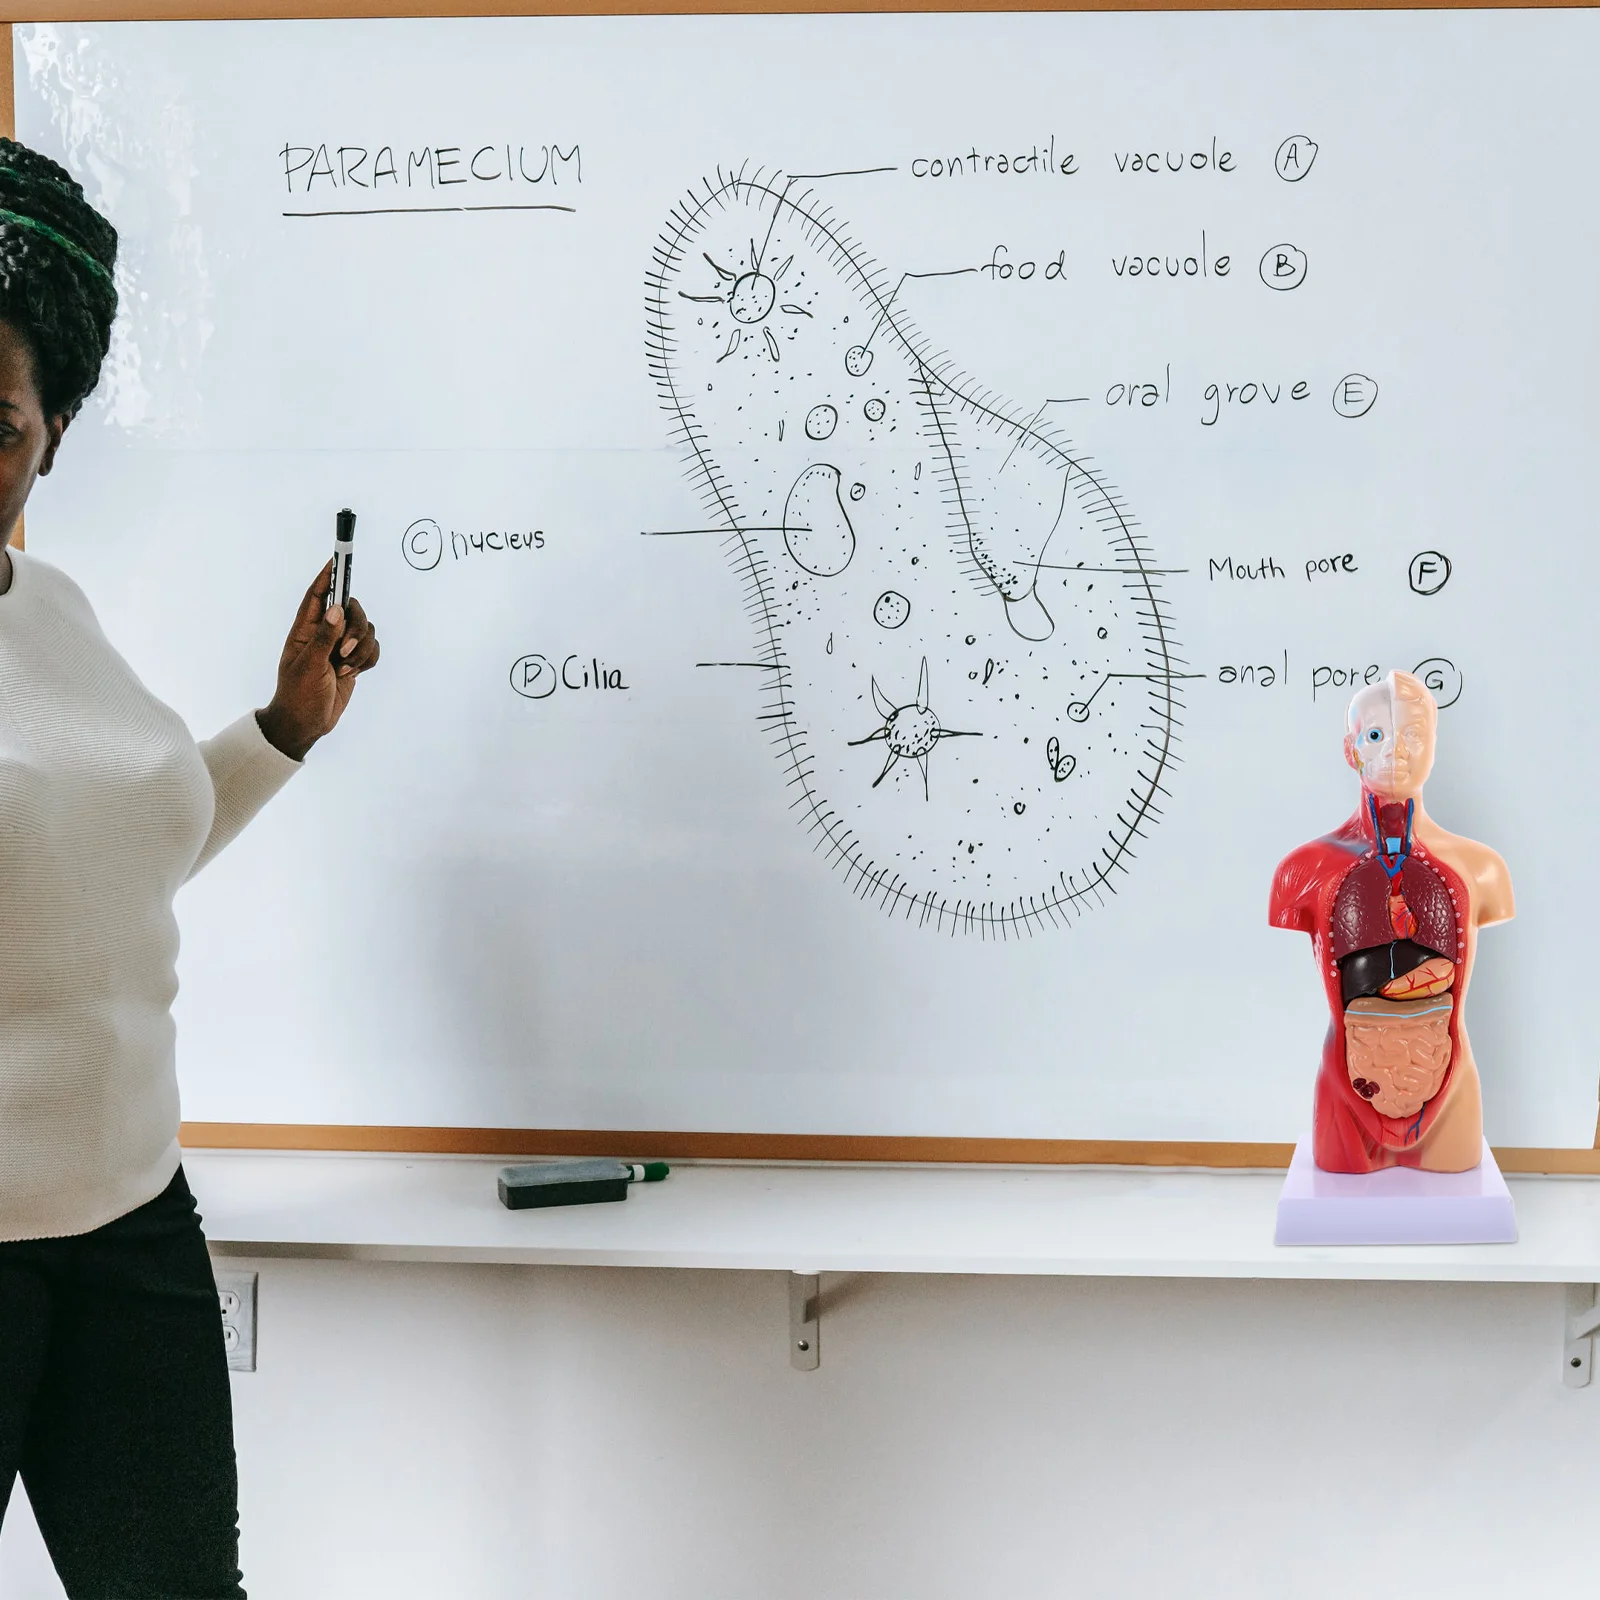 İnsan Torso Vücut Modeli Playset Öğretim Anatomi Organları Modeli Okul Eğitim aracı Çocuklar İnsan Vücudu Hemşirelik Torso Anatomik Görüntü 2